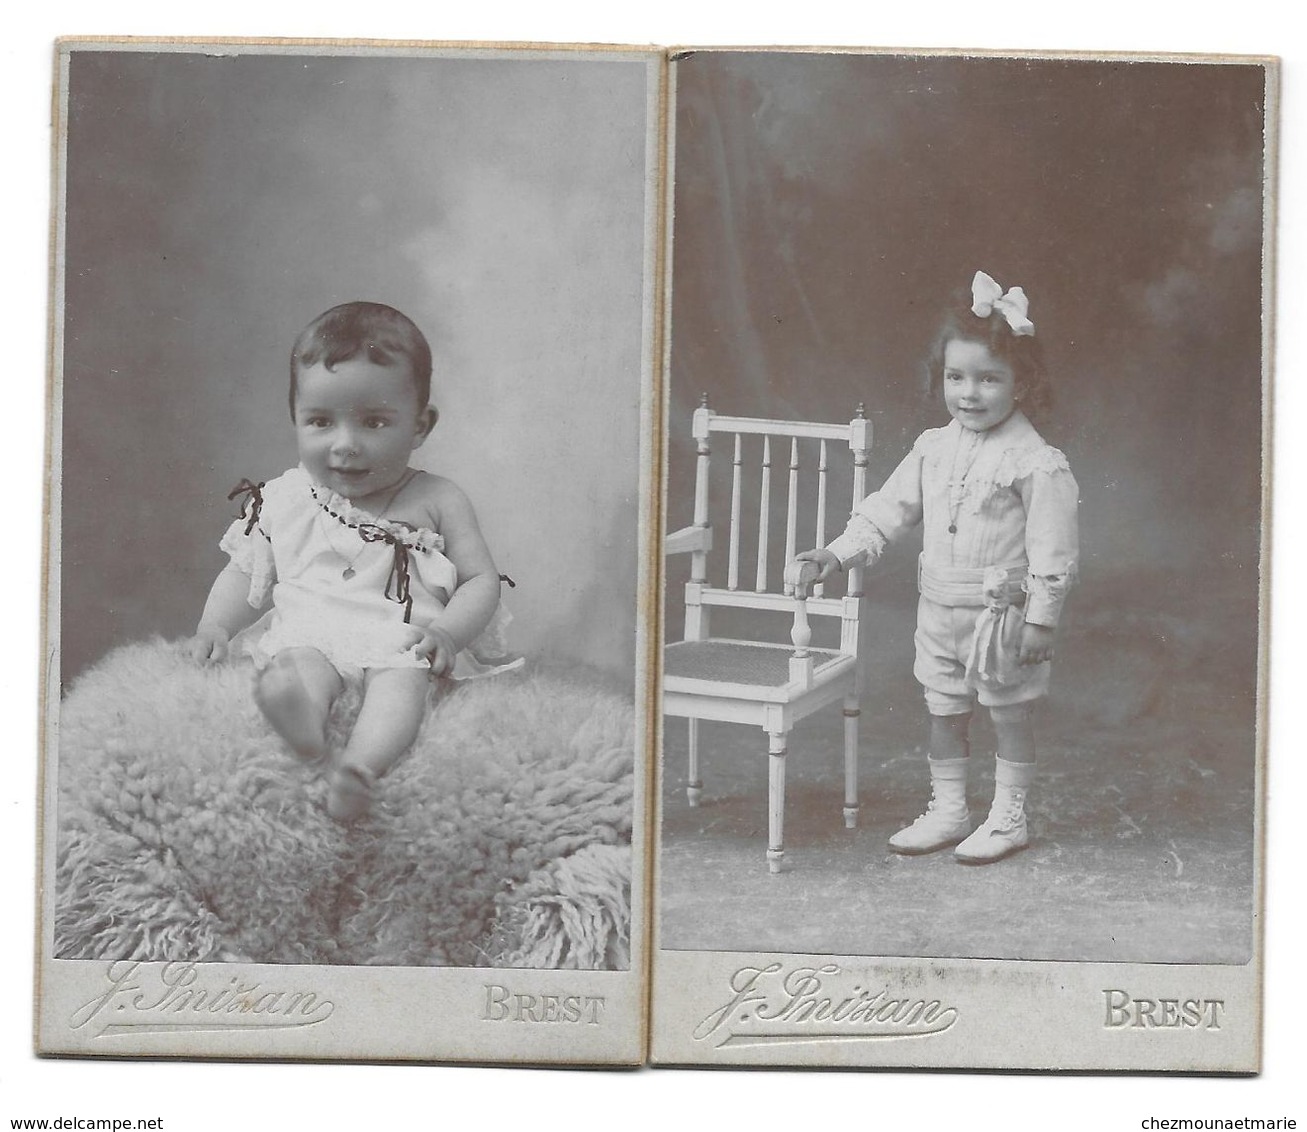 RAYMOND HILLAIRET FUTUR COMMISSAIRE DE LA MARINE NE EN 1906 A BREST - CDV PHOTO INIZAN LOT DE 2 - Célébrités